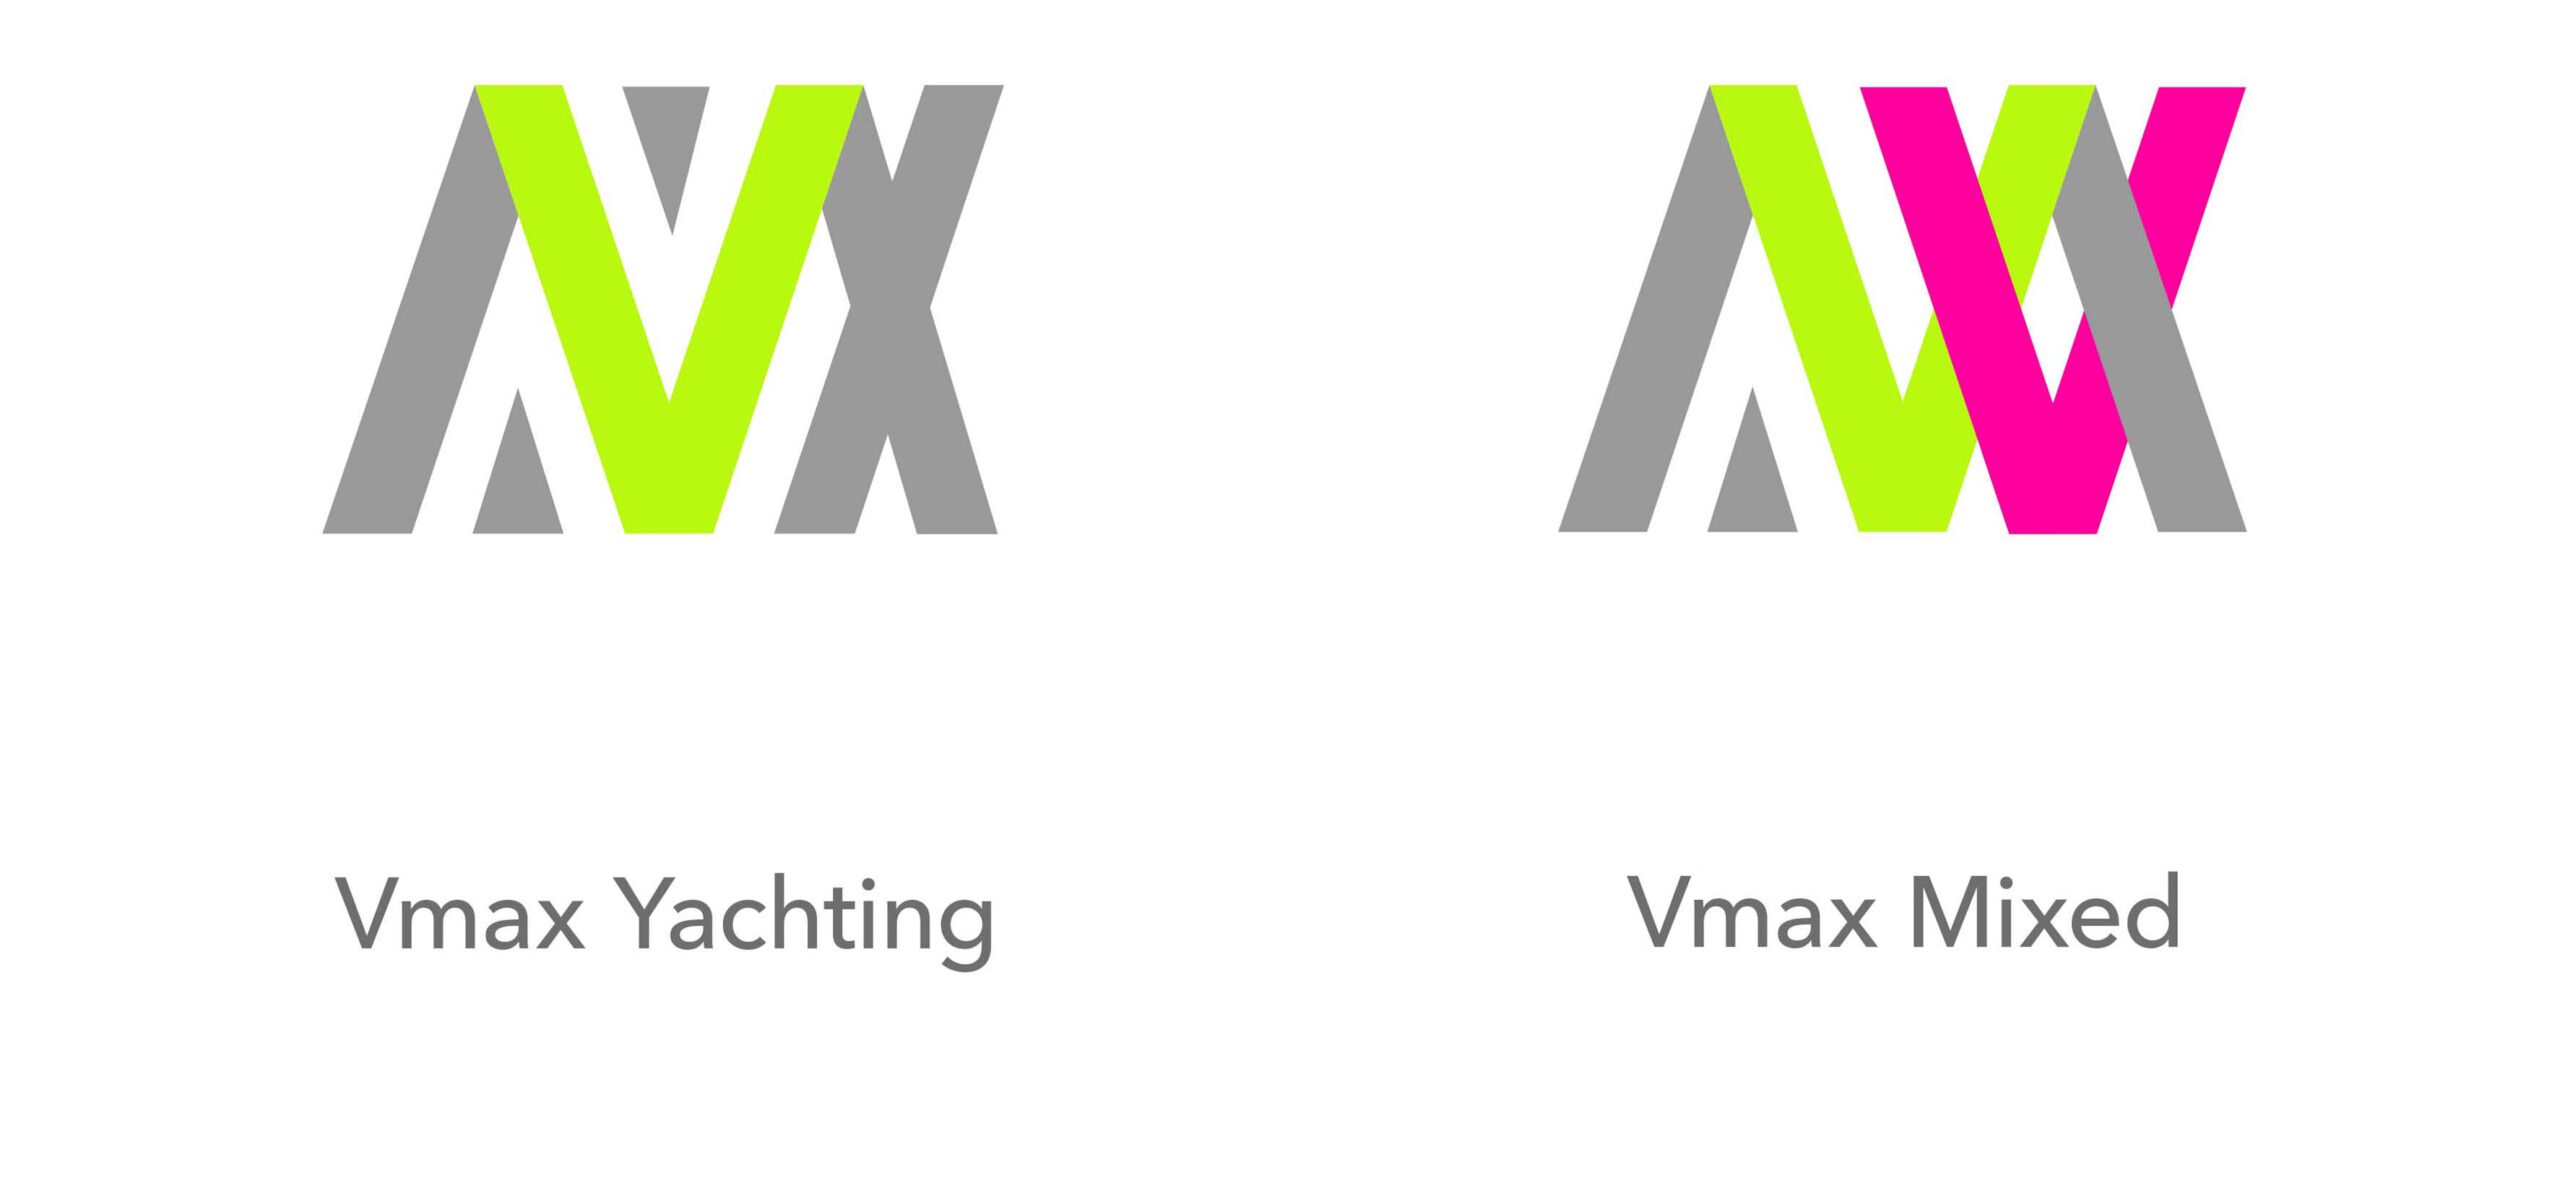 Vmax-Yachting-–-Mixed-1